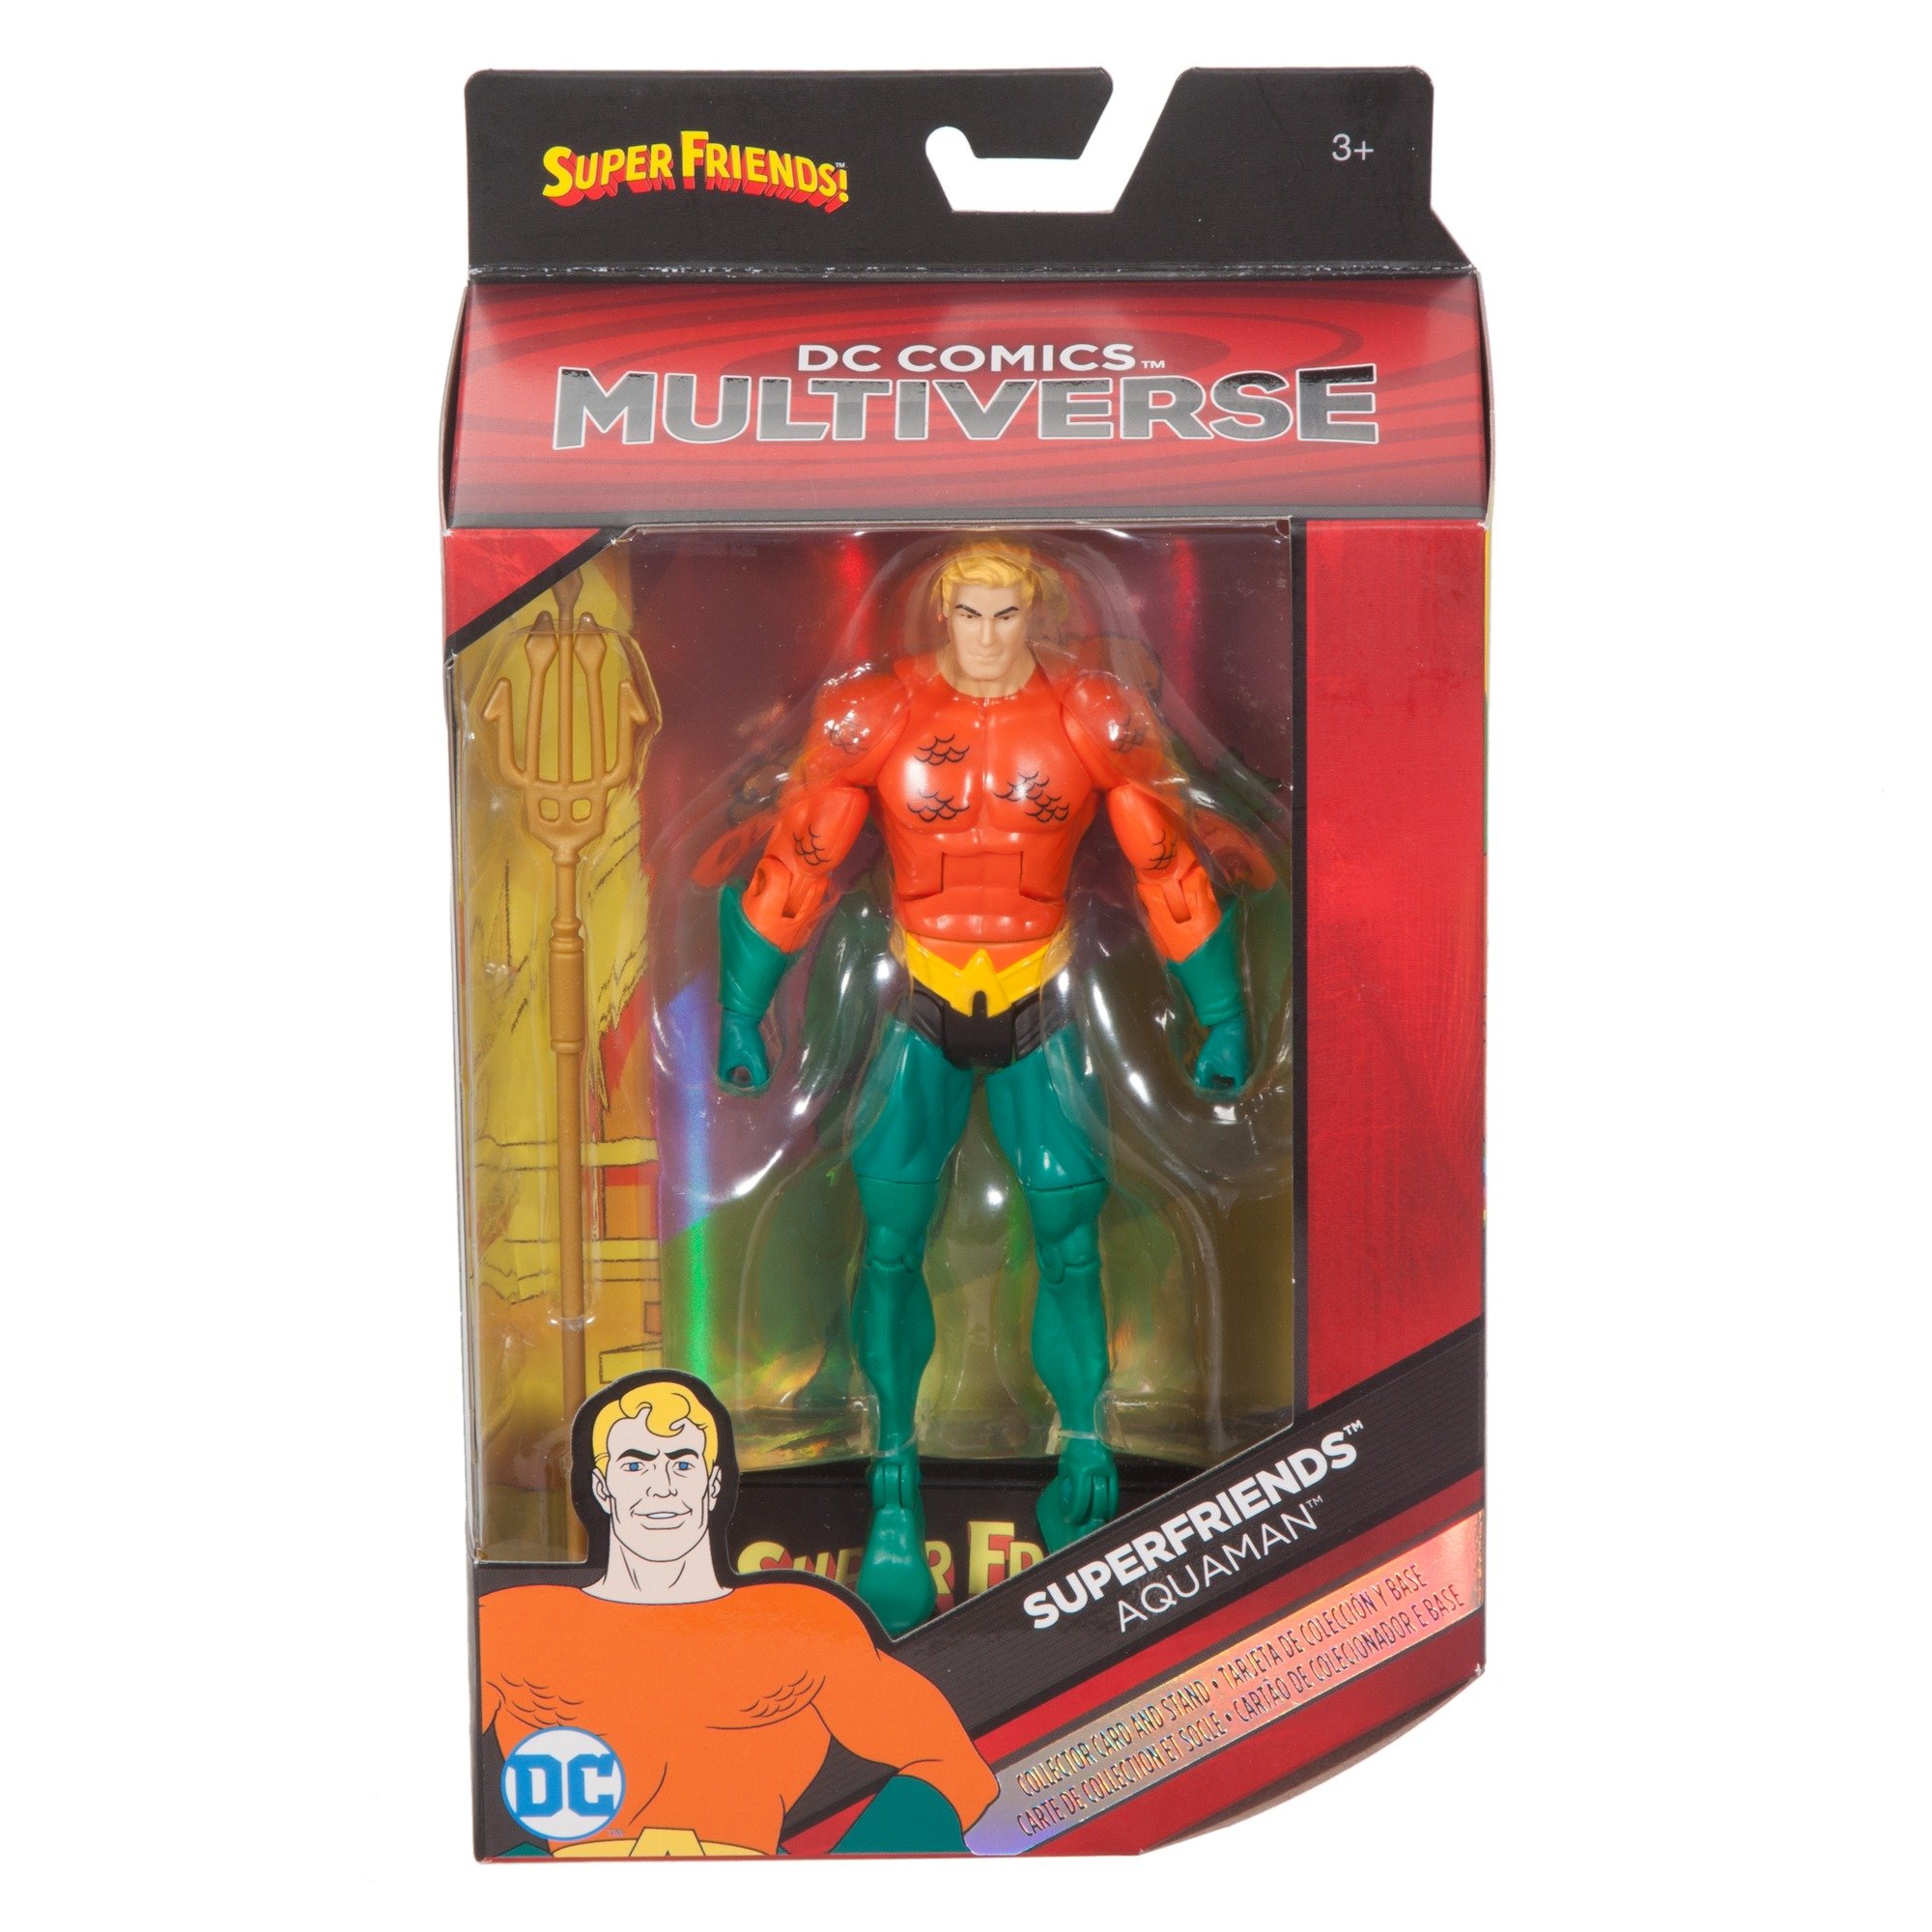 DC Super Friends Super Friend Multiverse Super Friends Aquaman Figure